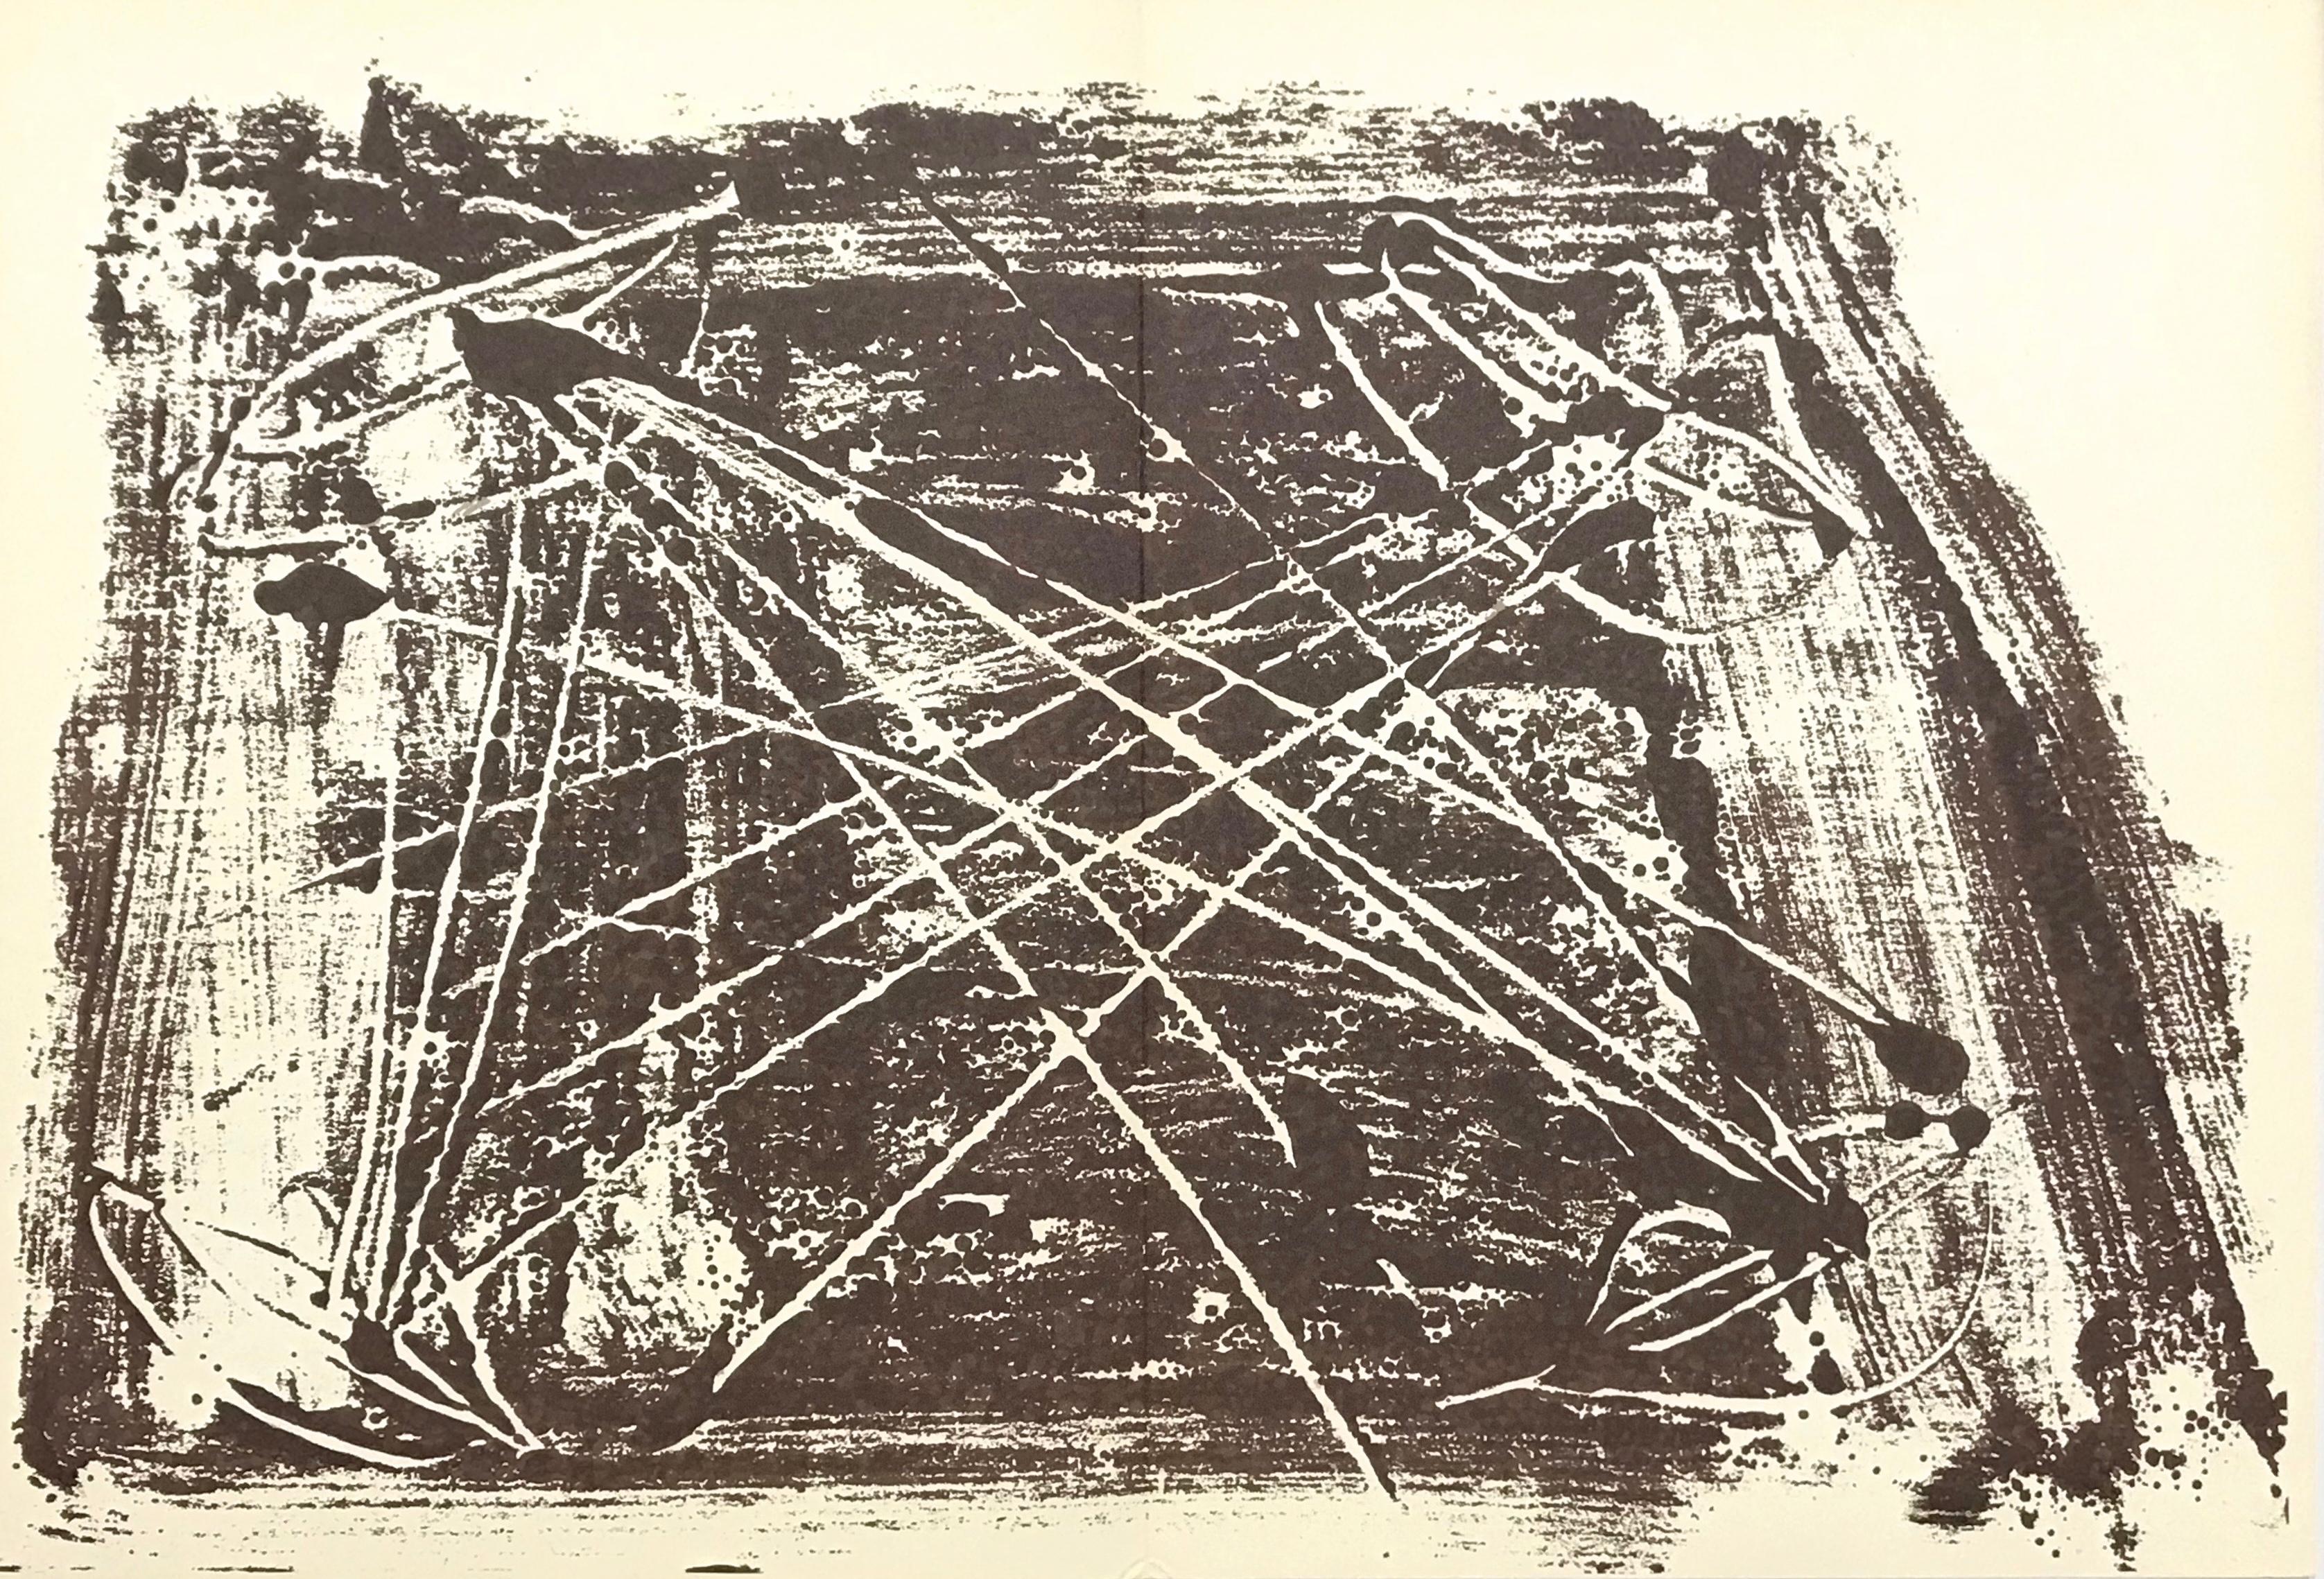 Abstract Print Antoni Tàpies - Tàpies, Composition, Derrière le miroir (après)